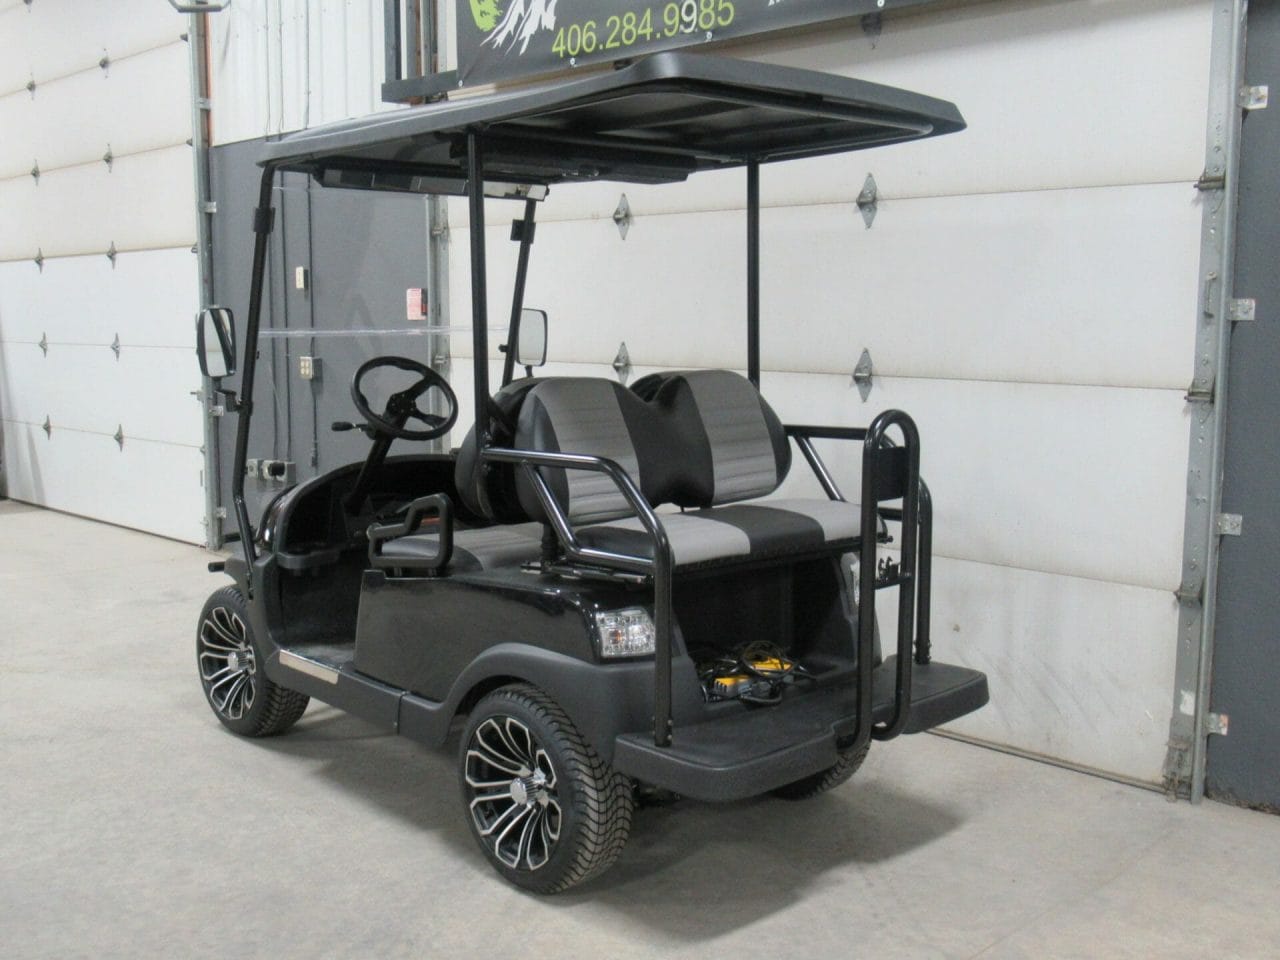 2022 Hisun Ace NV 4 Golf Carts * New *